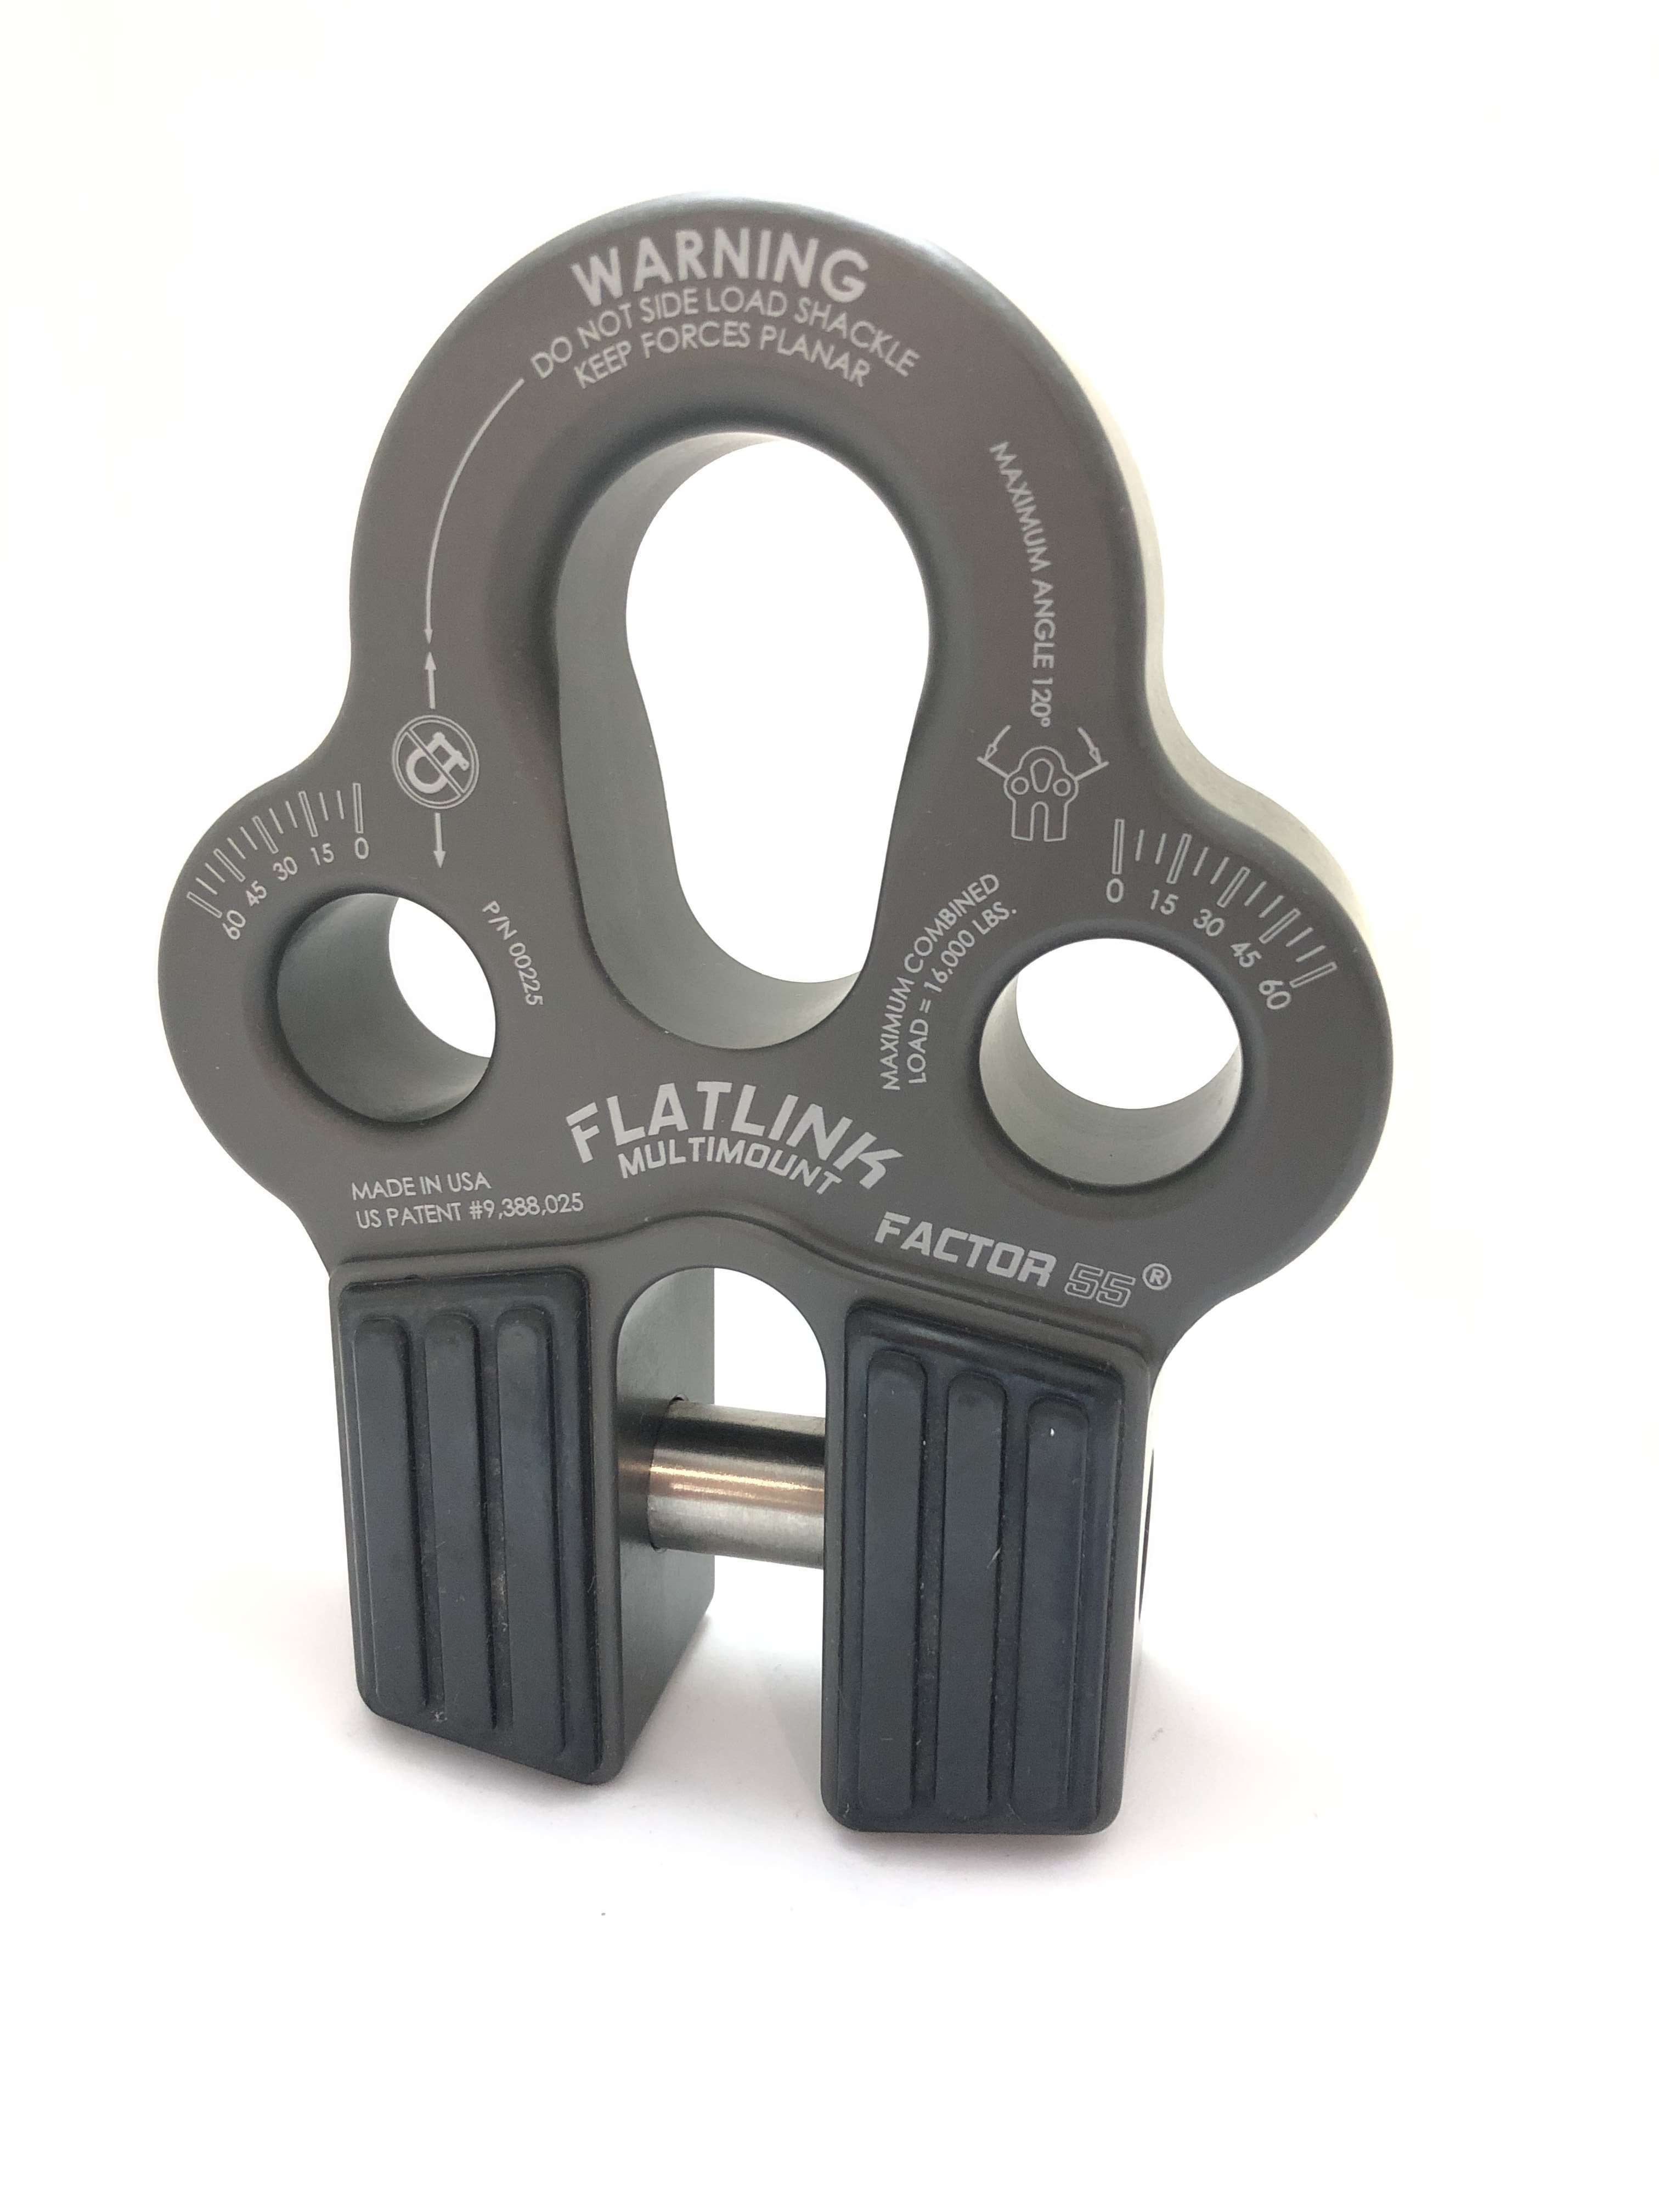 Factor 55 Flatlink MultiMount - Grey